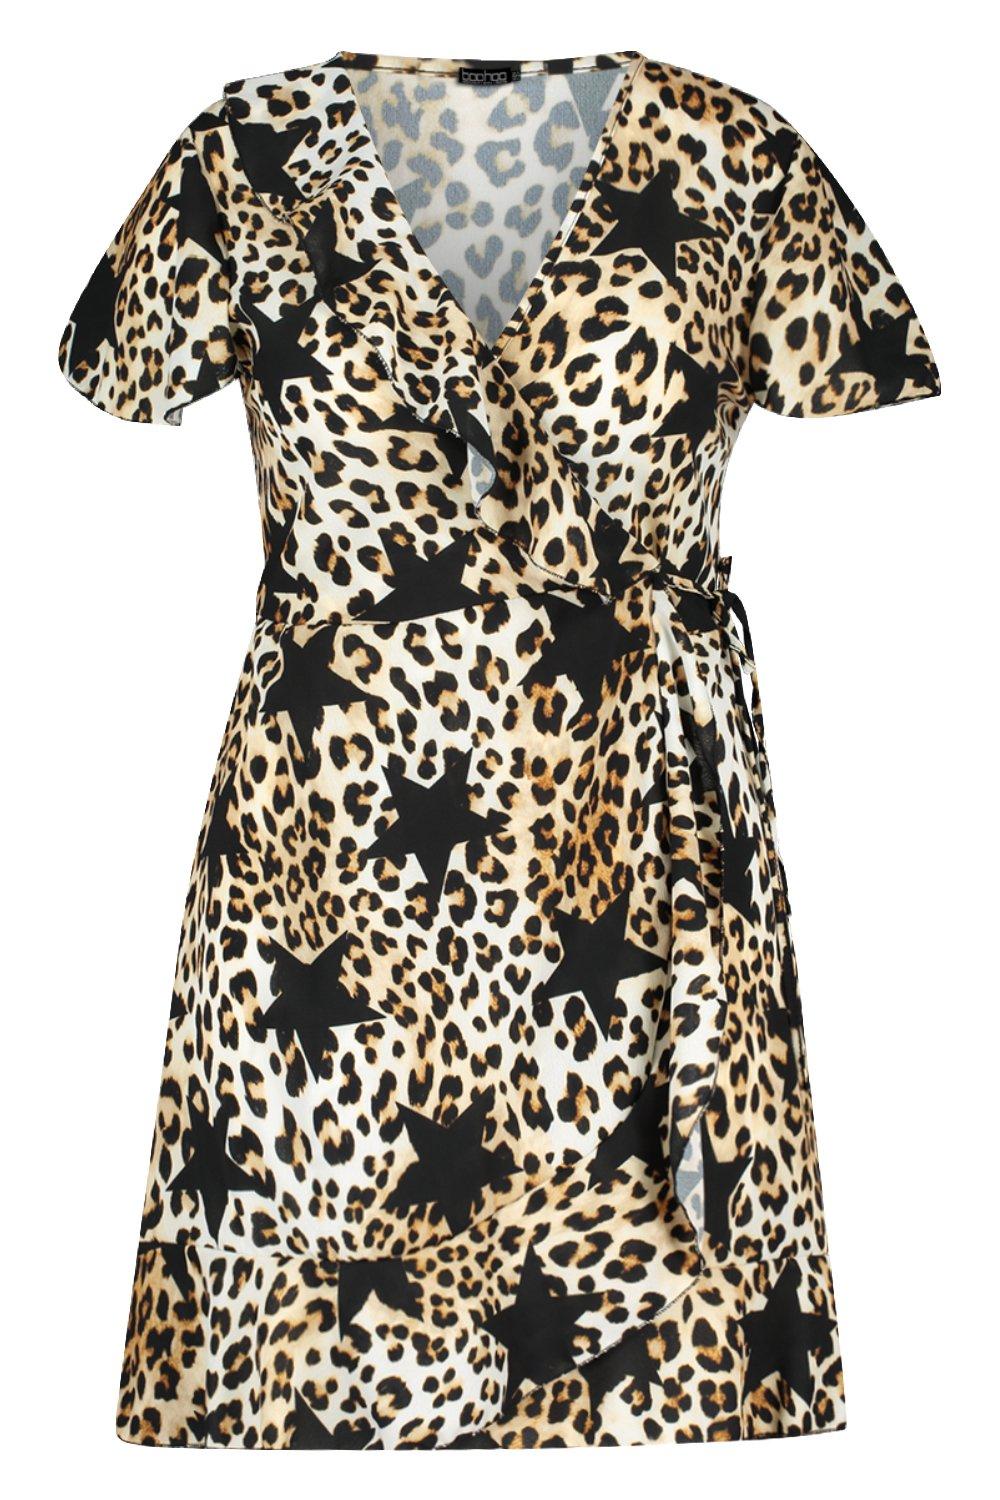 boohoo leopard star dress